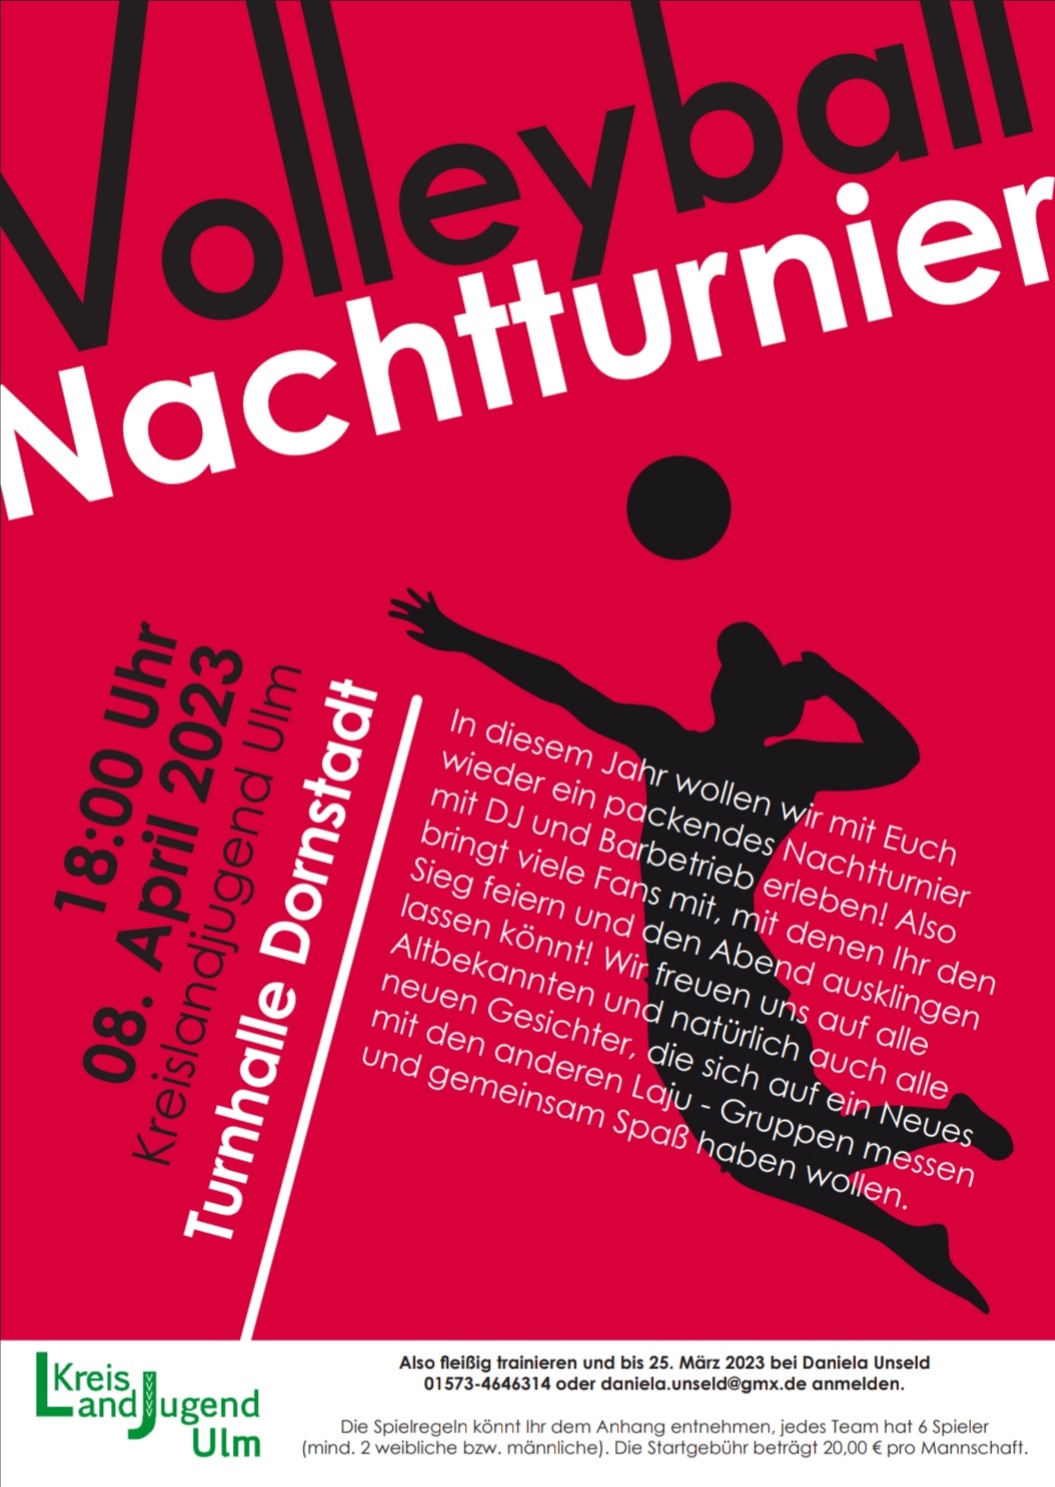 Volleyball Nachttunier der Kreislandjugend Ulm